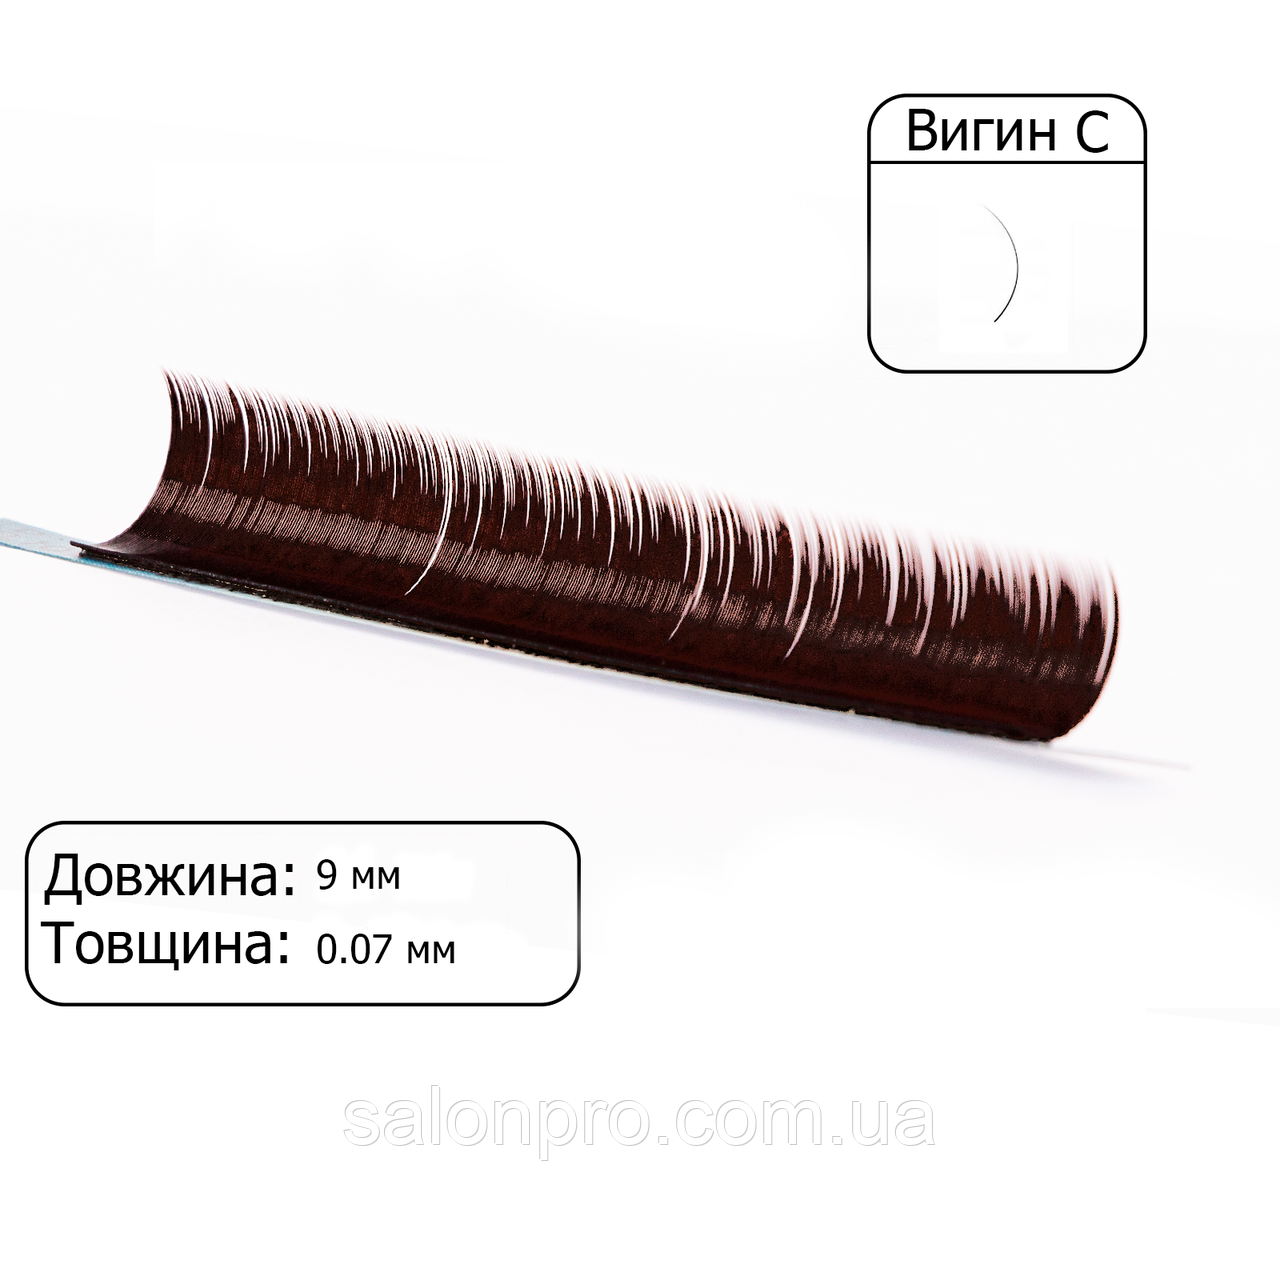 Вії коричневі VILMY, 1 стрічка VIYA Chocolate вигин C, товщина 0,07, довжина 9 мм